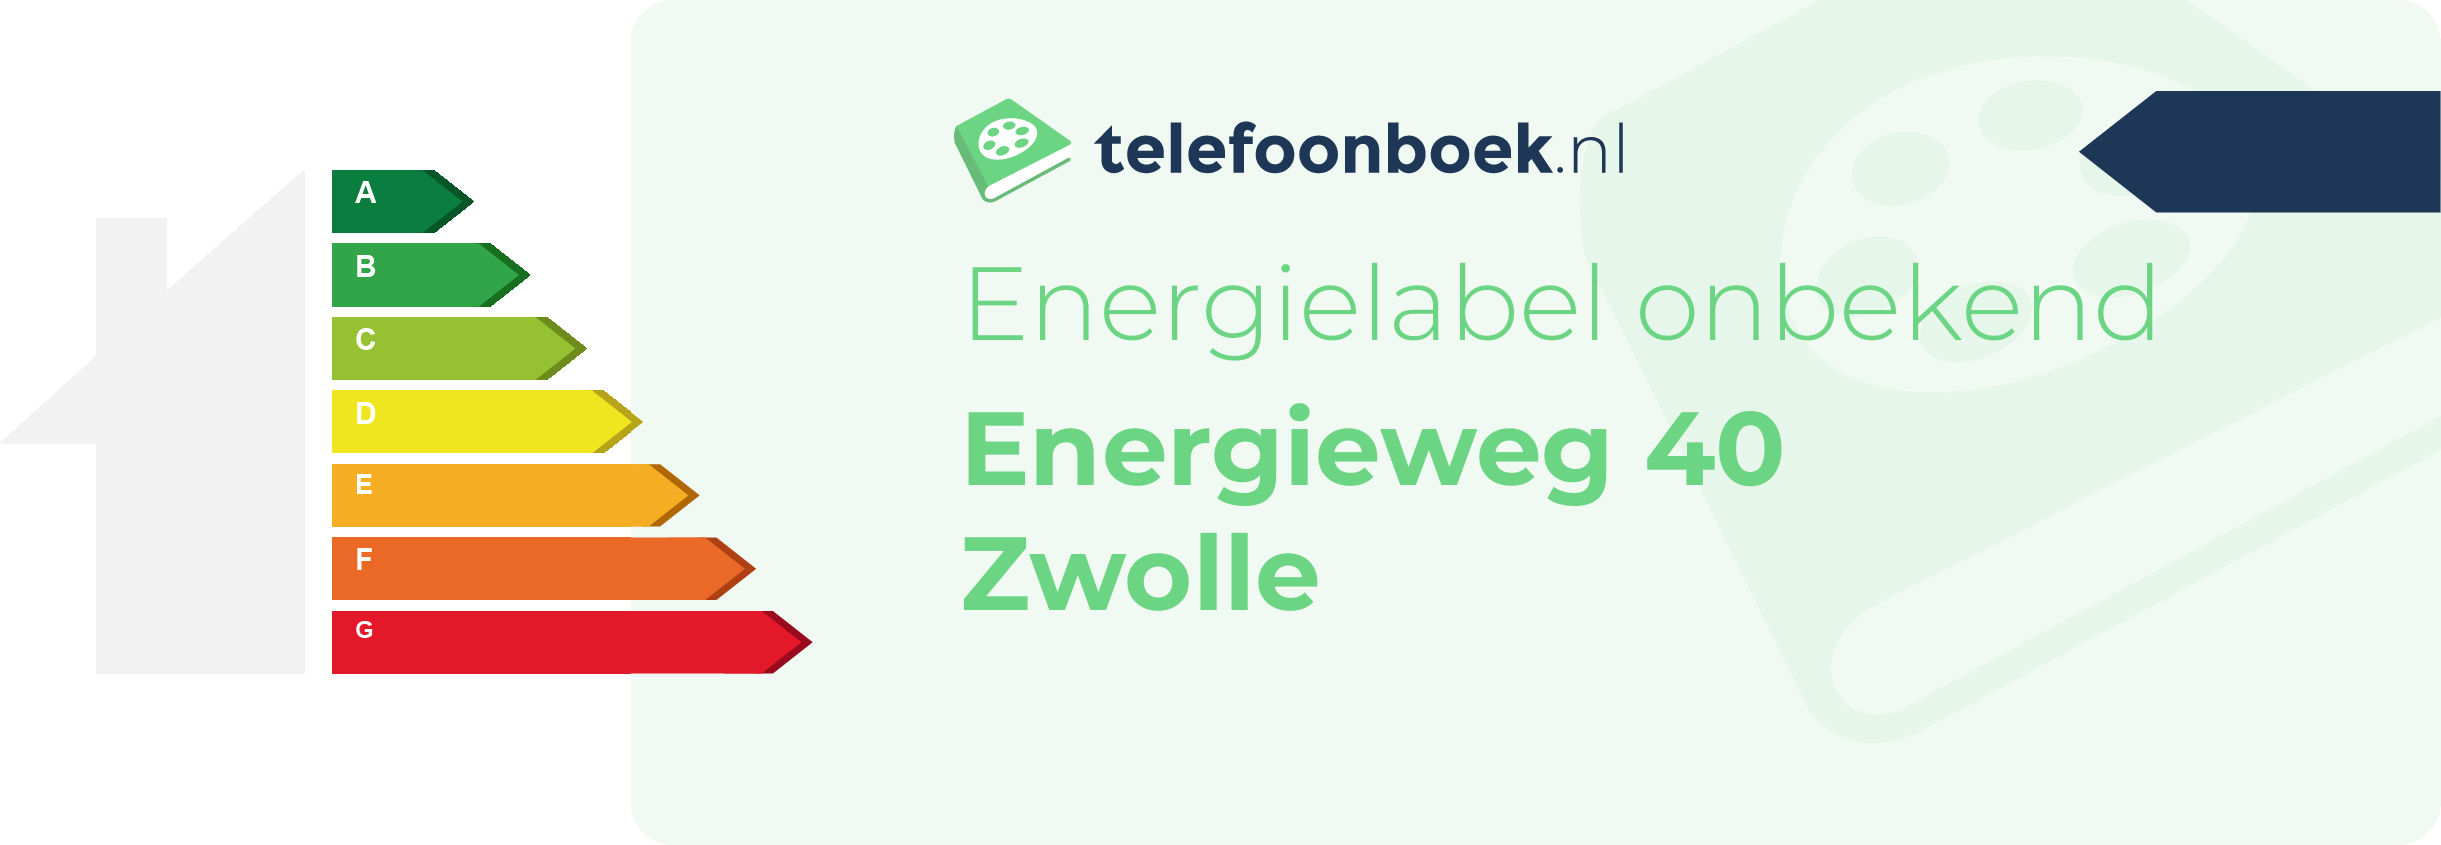 Energielabel Energieweg 40 Zwolle